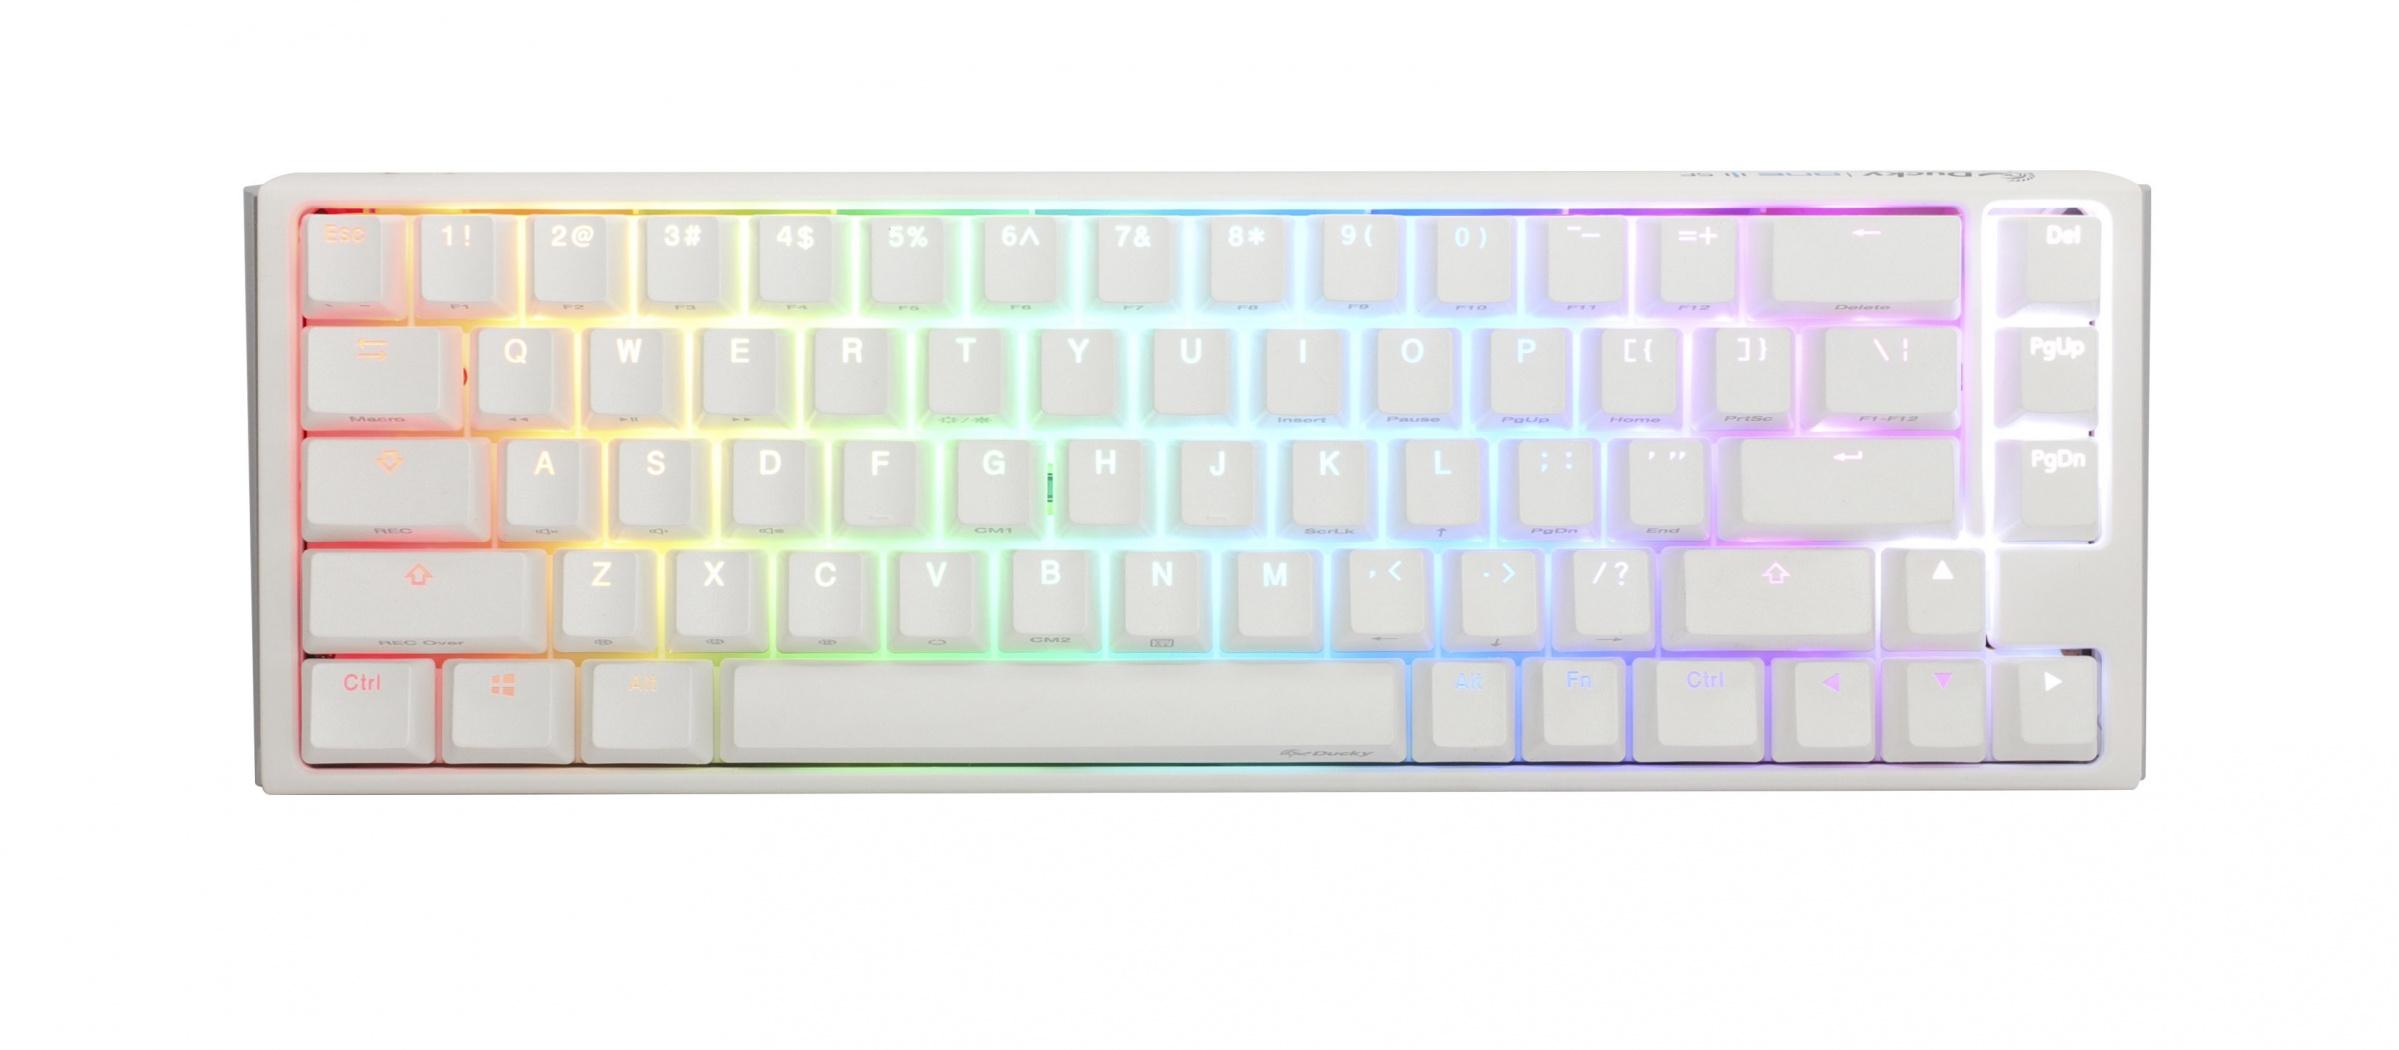 Геймърскa механична клавиатура Ducky One 3 Pure White SF 65, Hotswap Cherry Mx Clear, RGB, PBT Keycaps